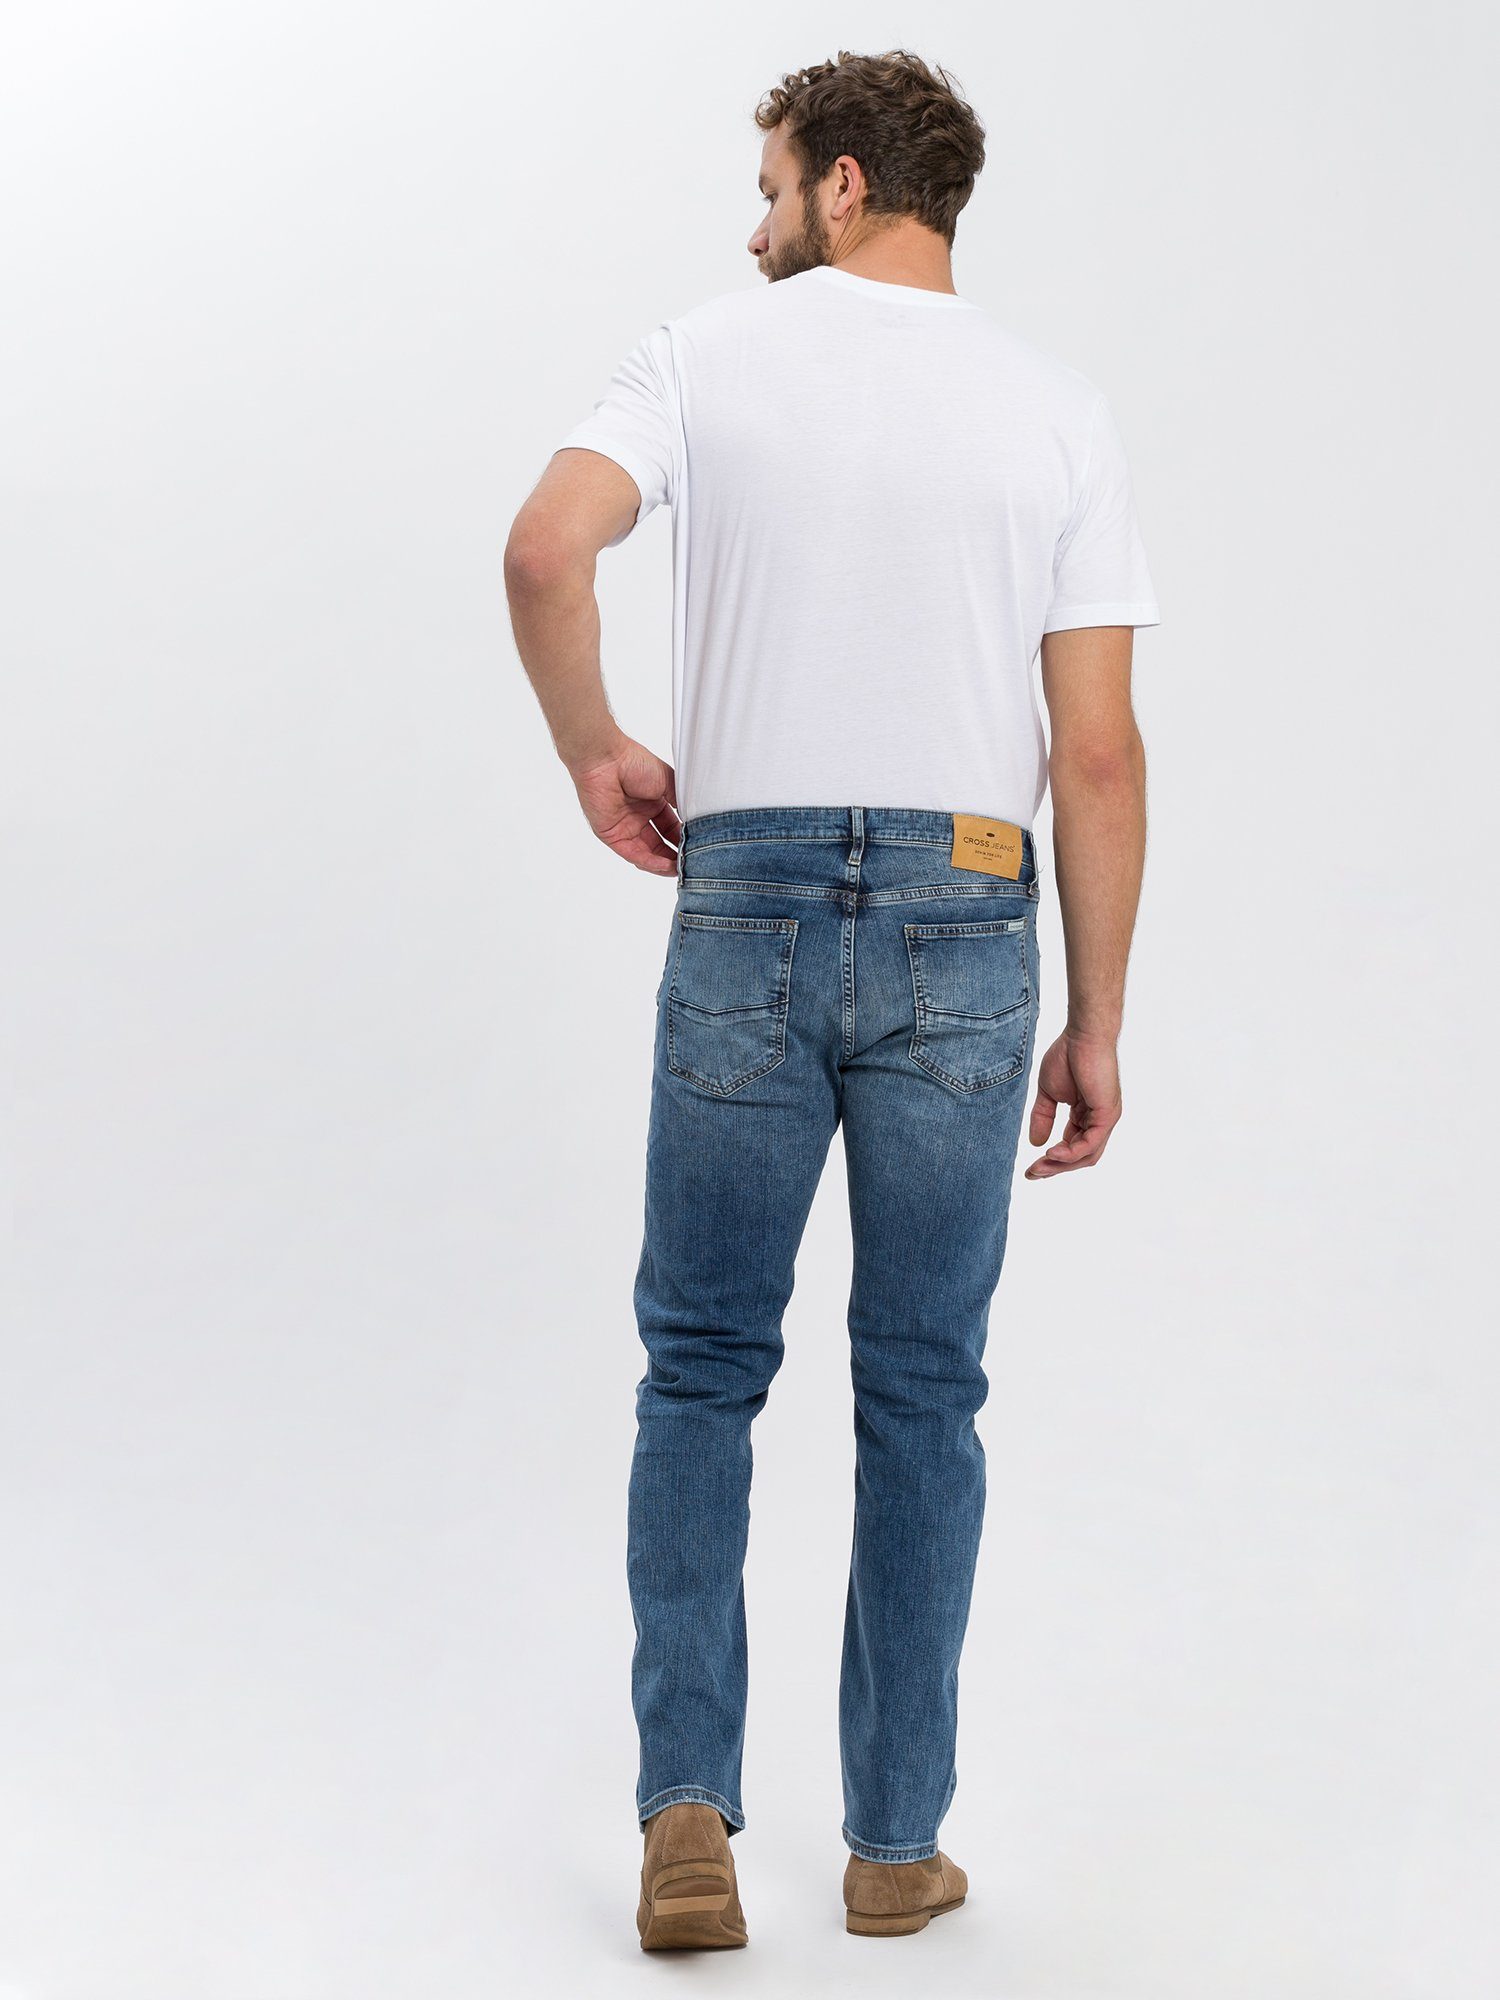 JEANS® Damien Slim-fit-Jeans CROSS